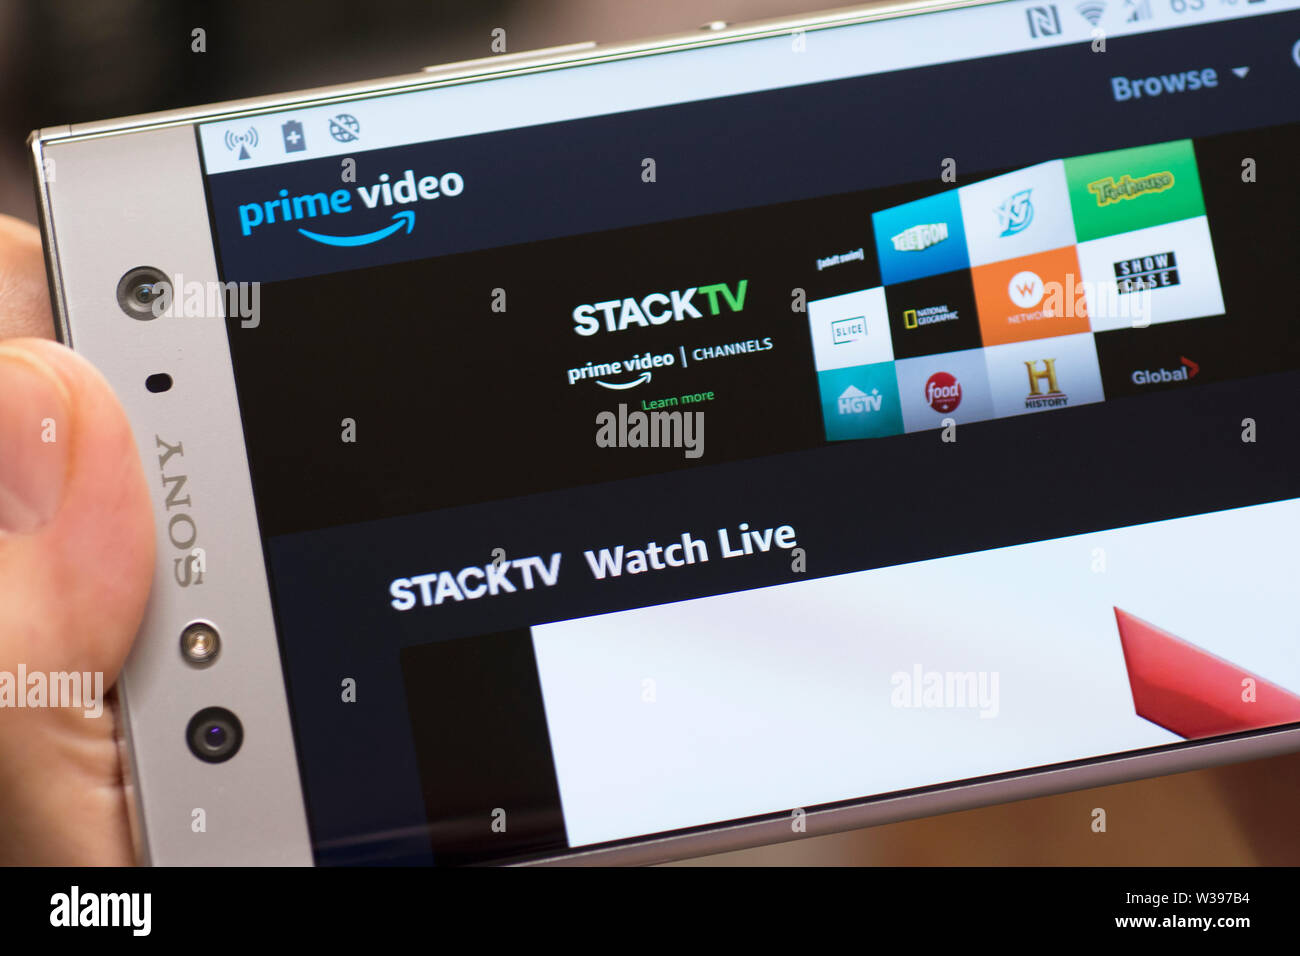 Amazon premier vidéo, télévision, cheminée, écran site StackTV streaming TV satellite sur téléphone mobile Android Banque D'Images